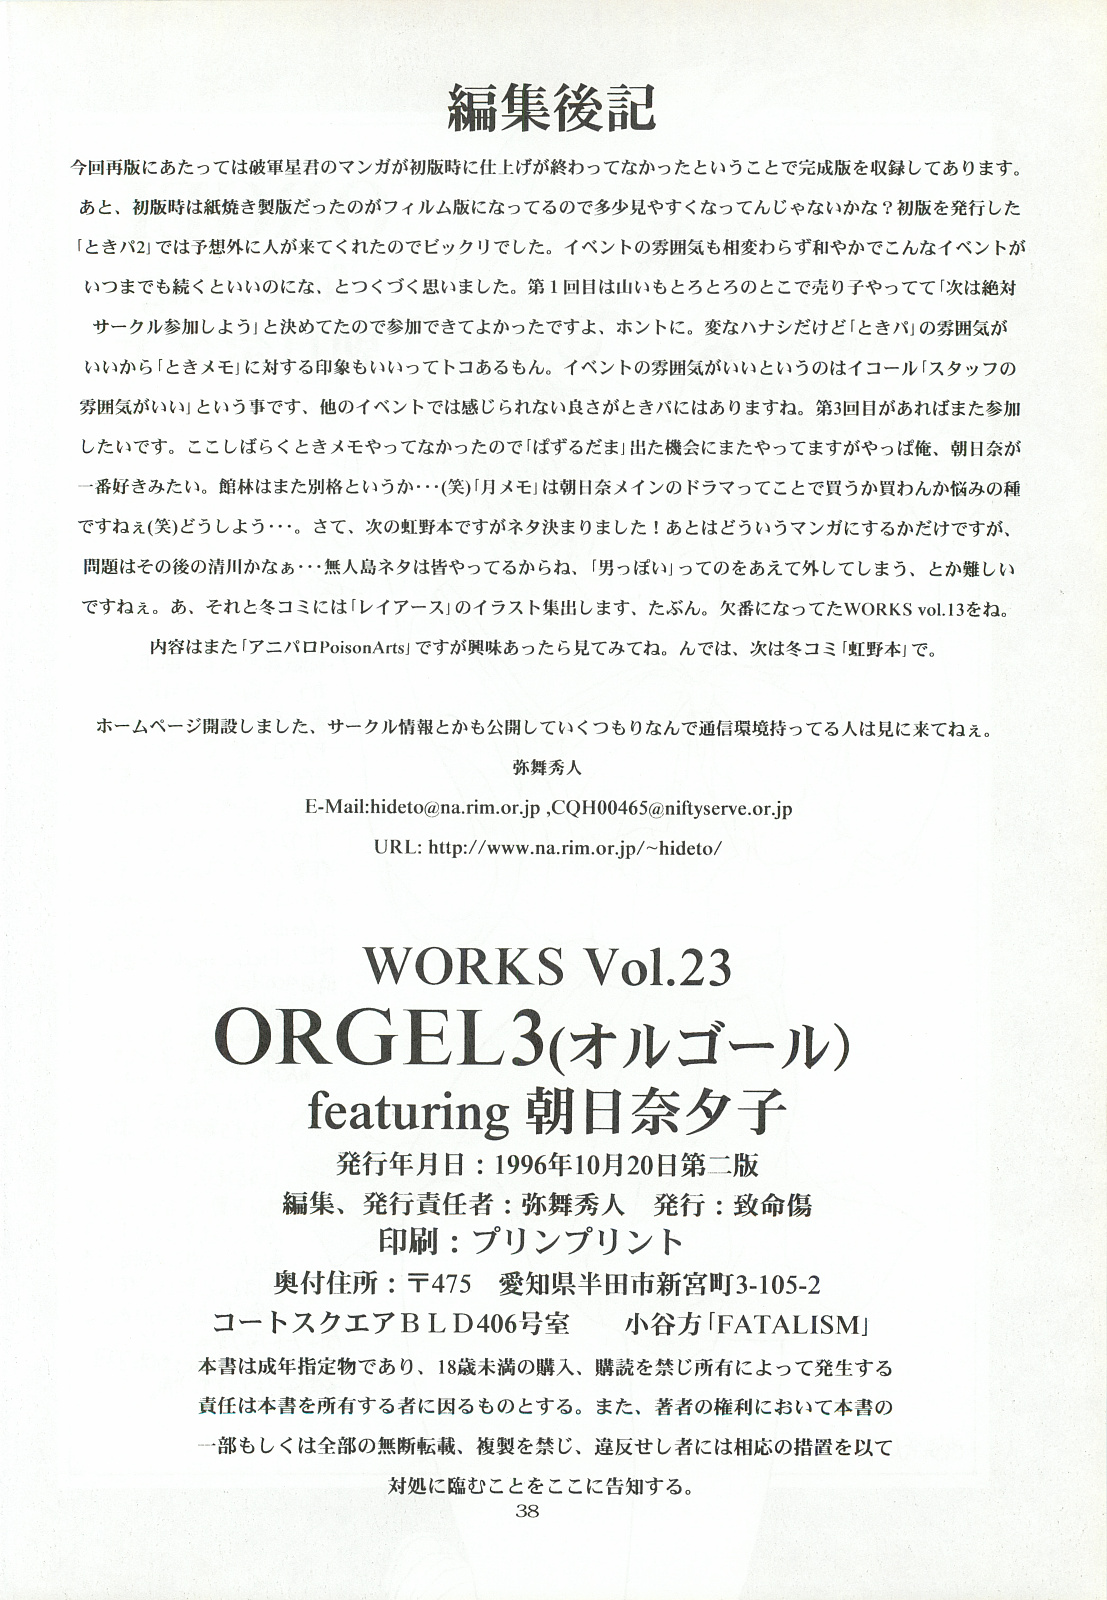 [致命傷 (弥舞秀人)] ORGEL3 featuring 朝日奈夕子 (ときめきメモリアル)